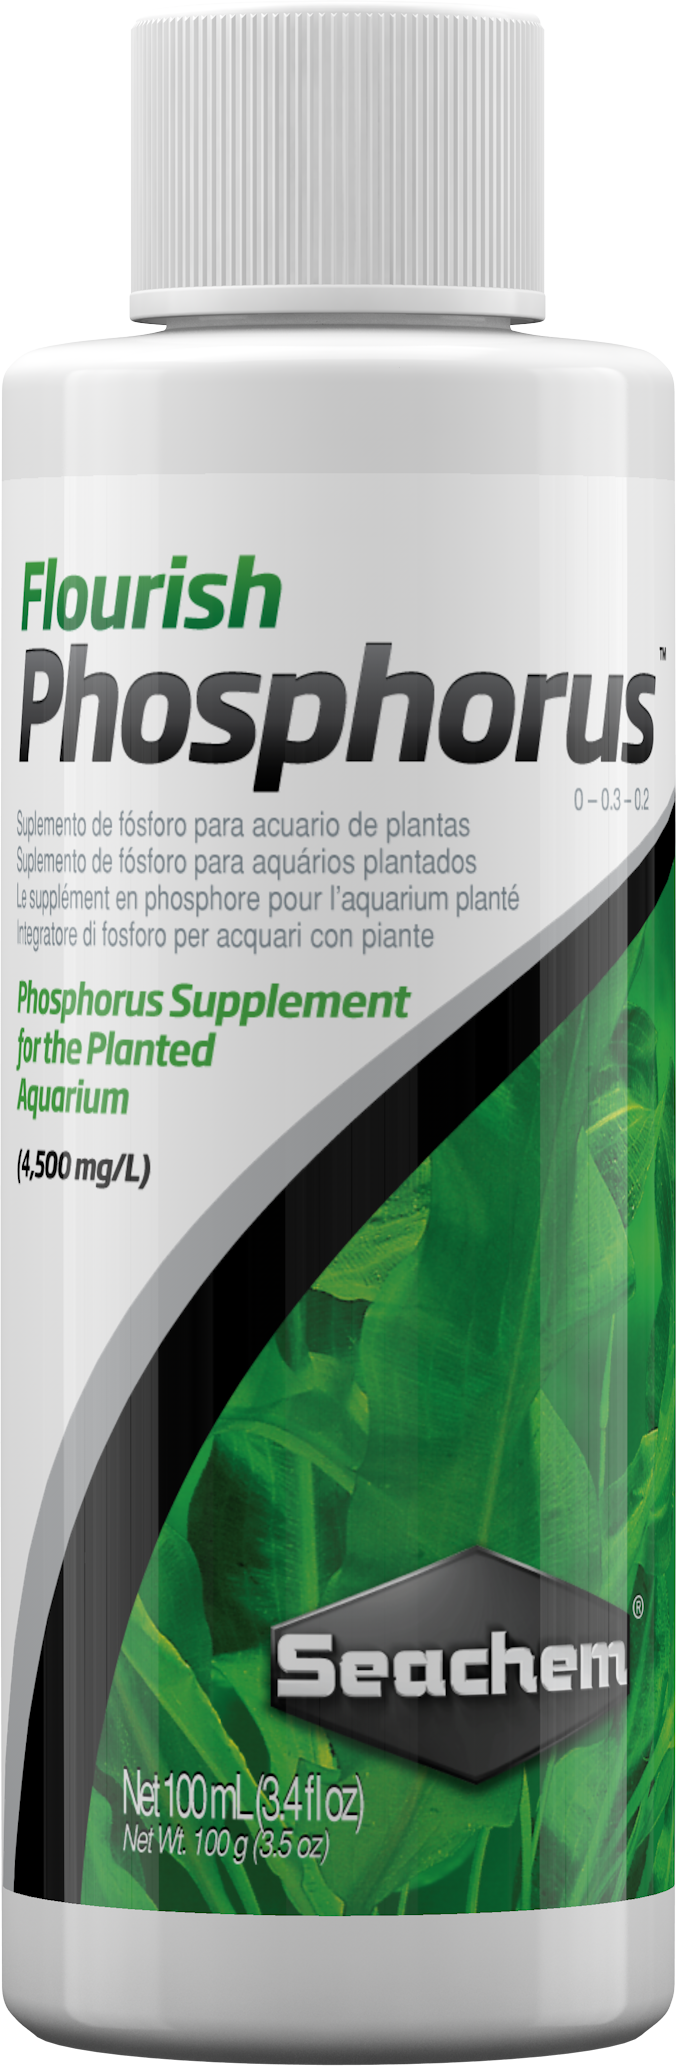 Seachem Flourish Phosphorus